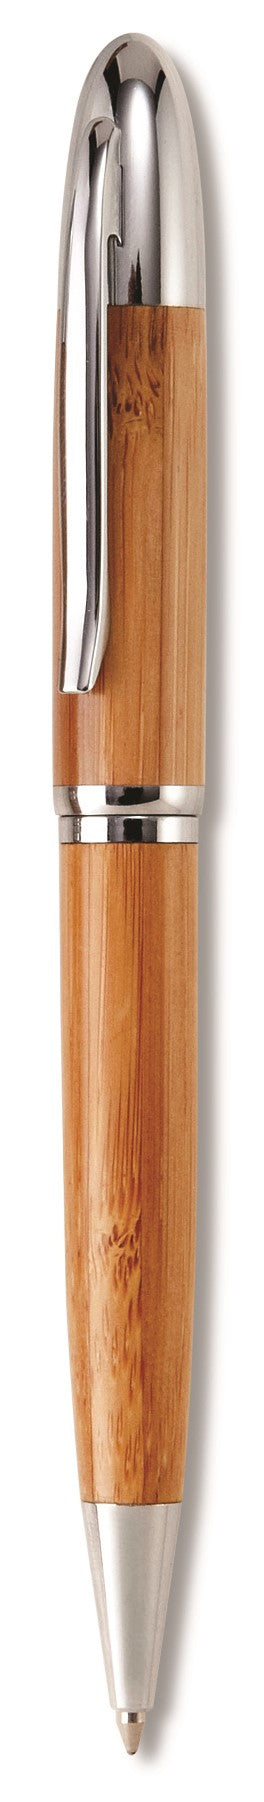 Unity Bamboo Ball Pen & Pencil Set Natural / NT - Sets